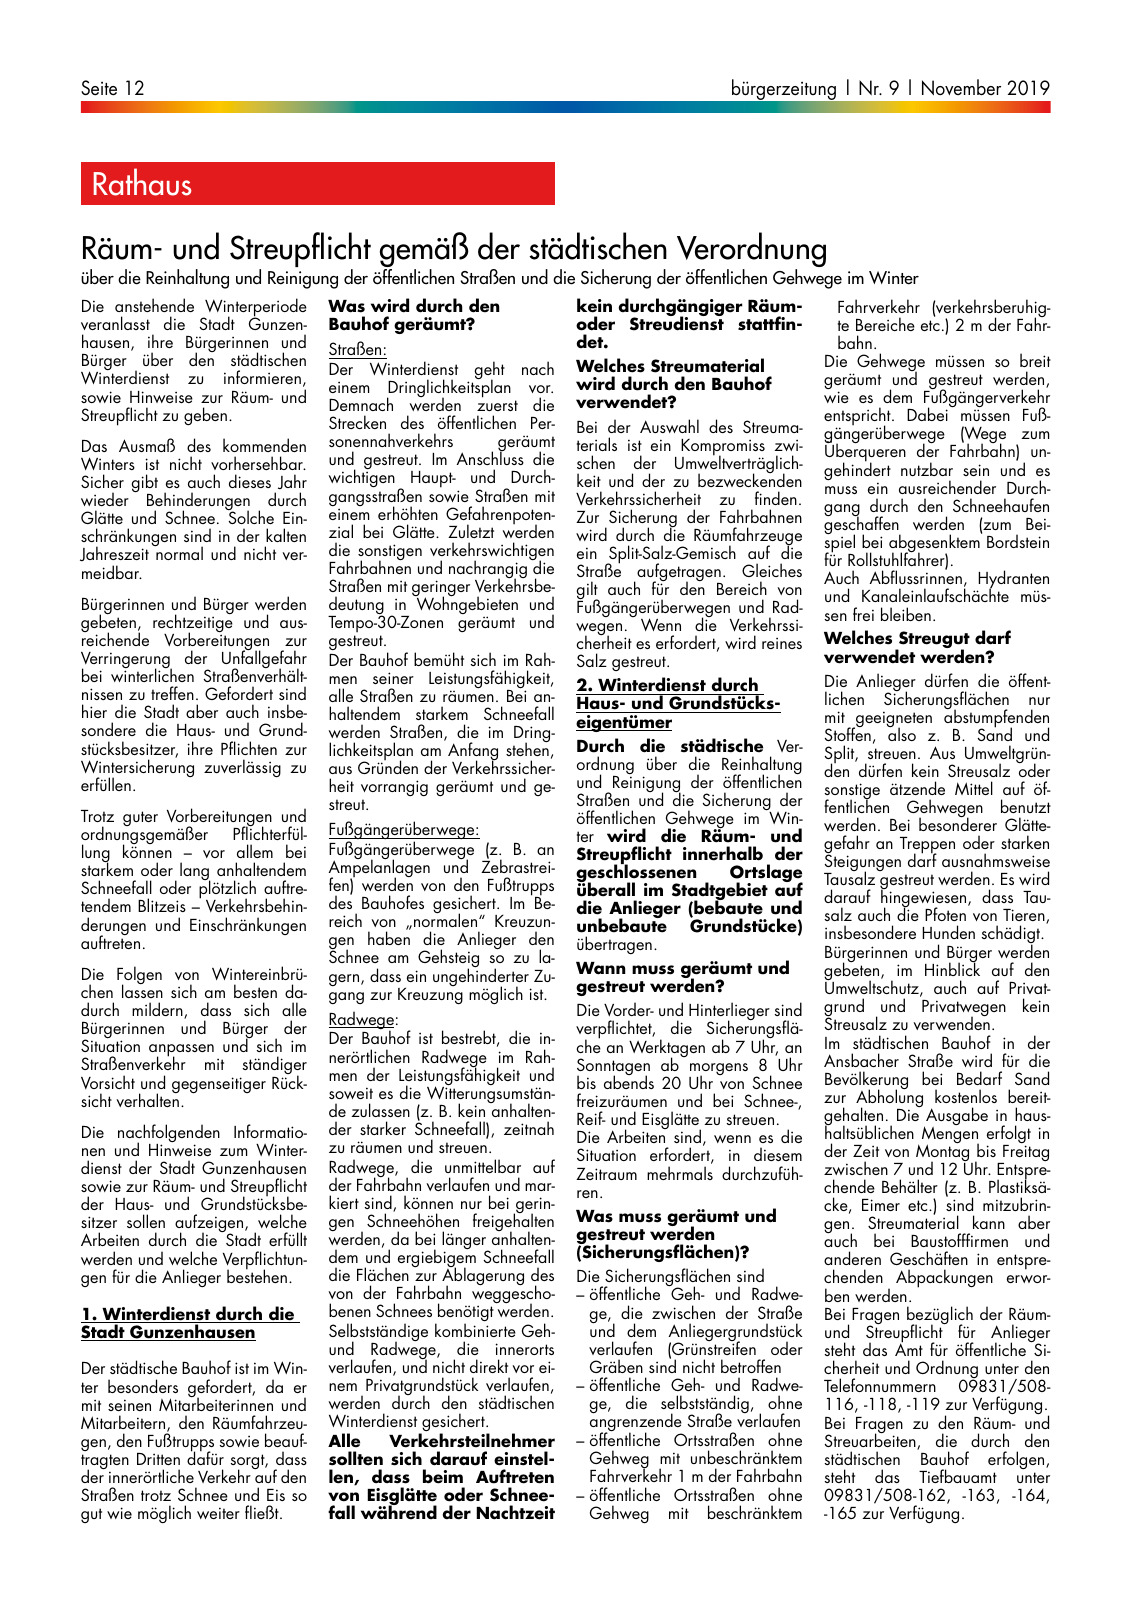 Vorschau buergerzeitung_11_2019 Seite 12